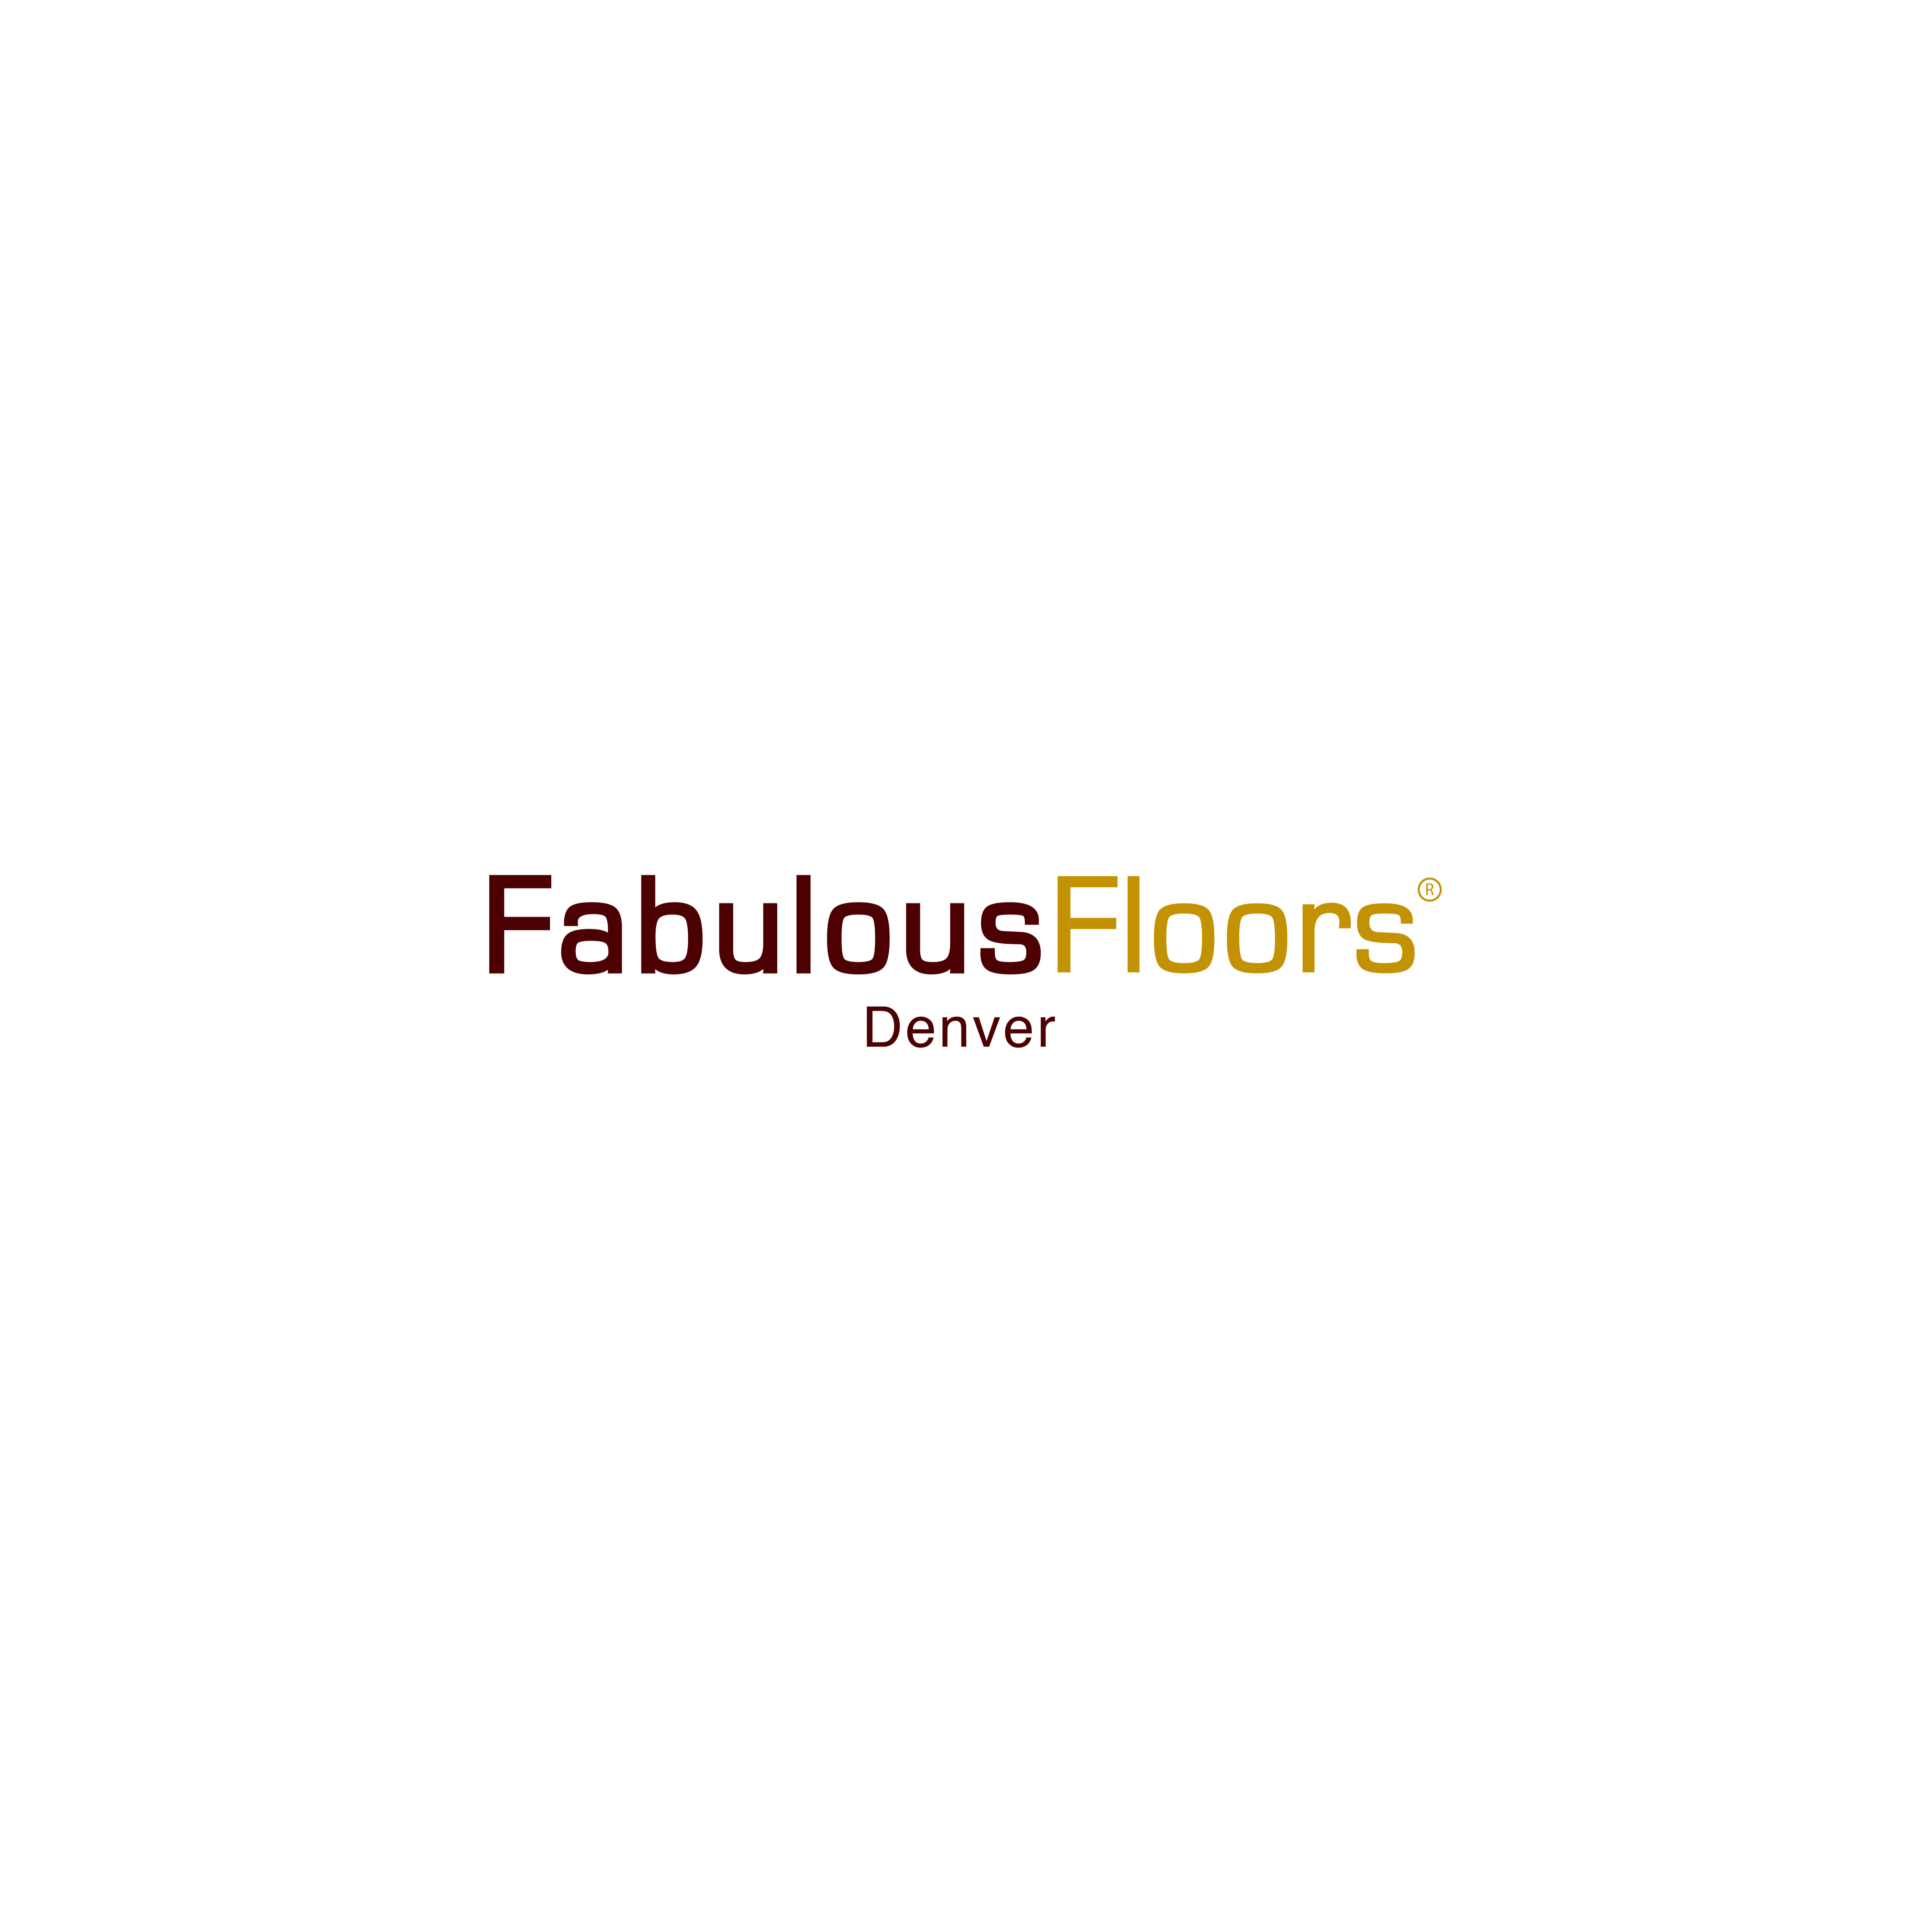 Fabulous Floors Denver